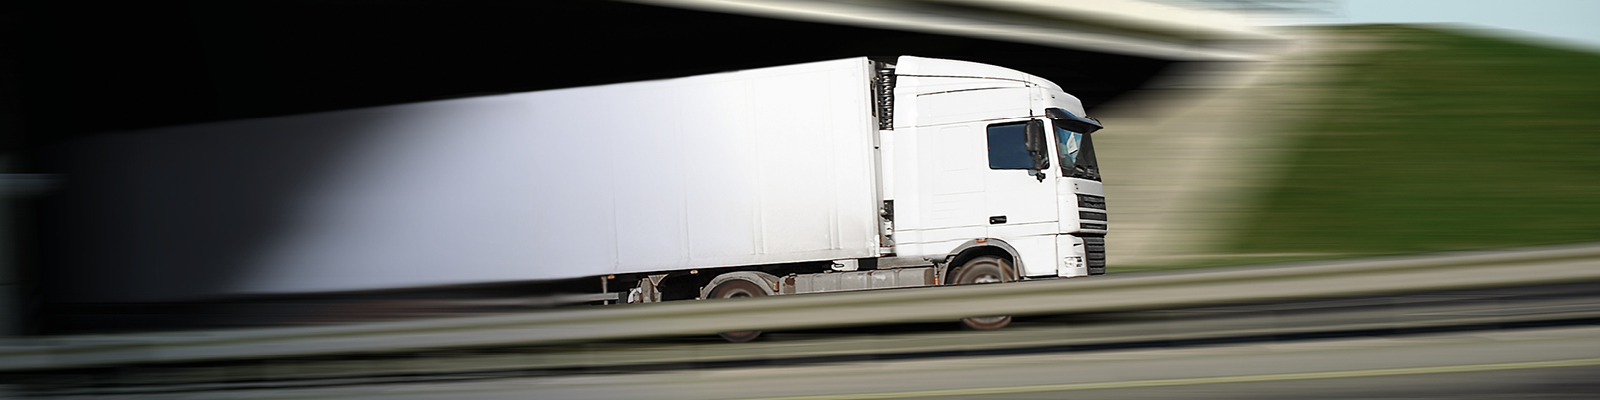 Transport Law & Logistics Solicitors